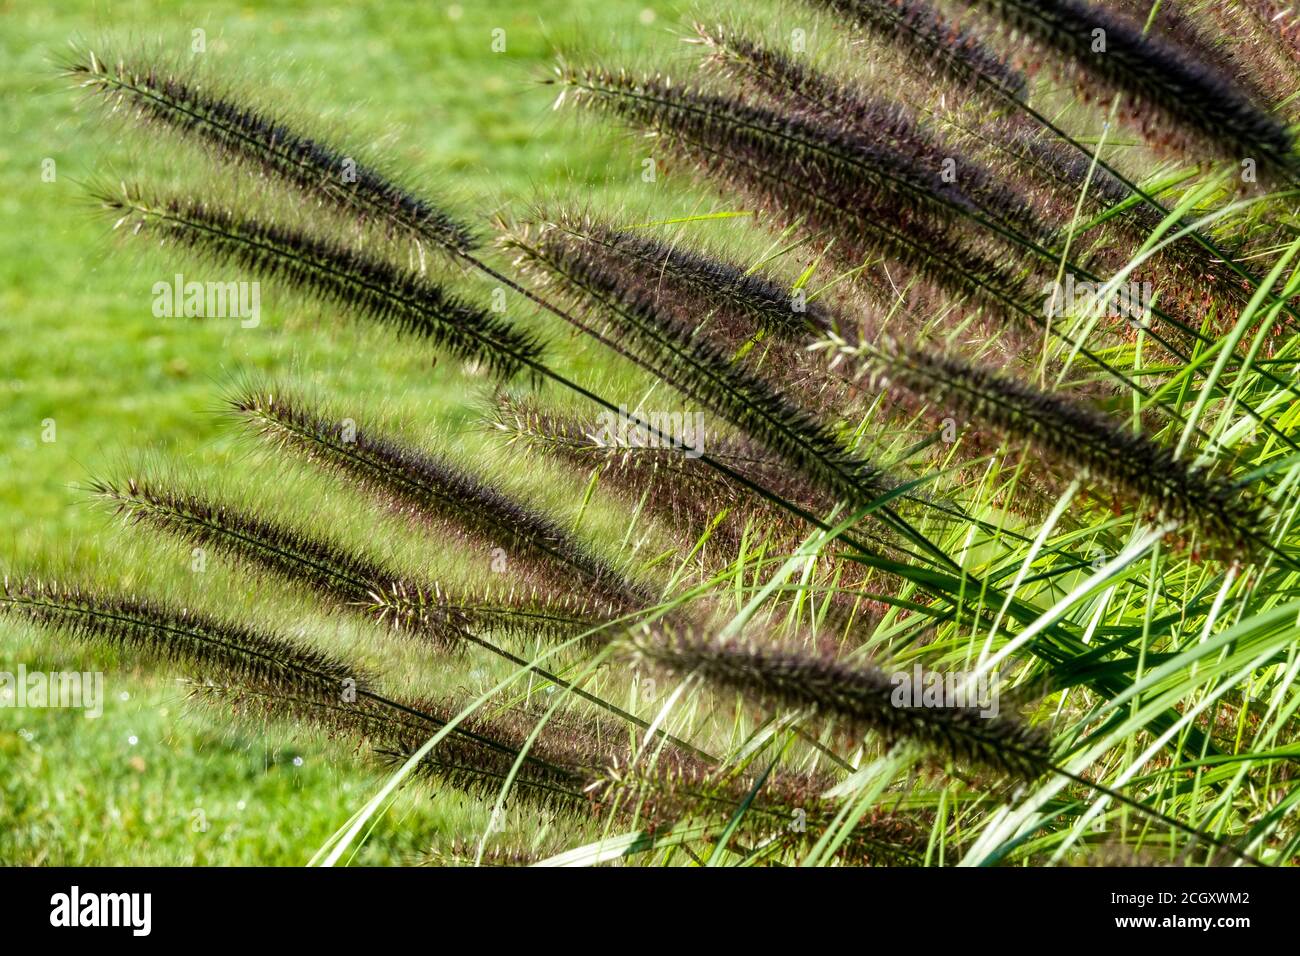 Fontaine noire herbe Pennisetum alopecuroides 'oudry' jardin de fin d'été plantes vivaces ornementales graminées Pennisetum Moudry Banque D'Images